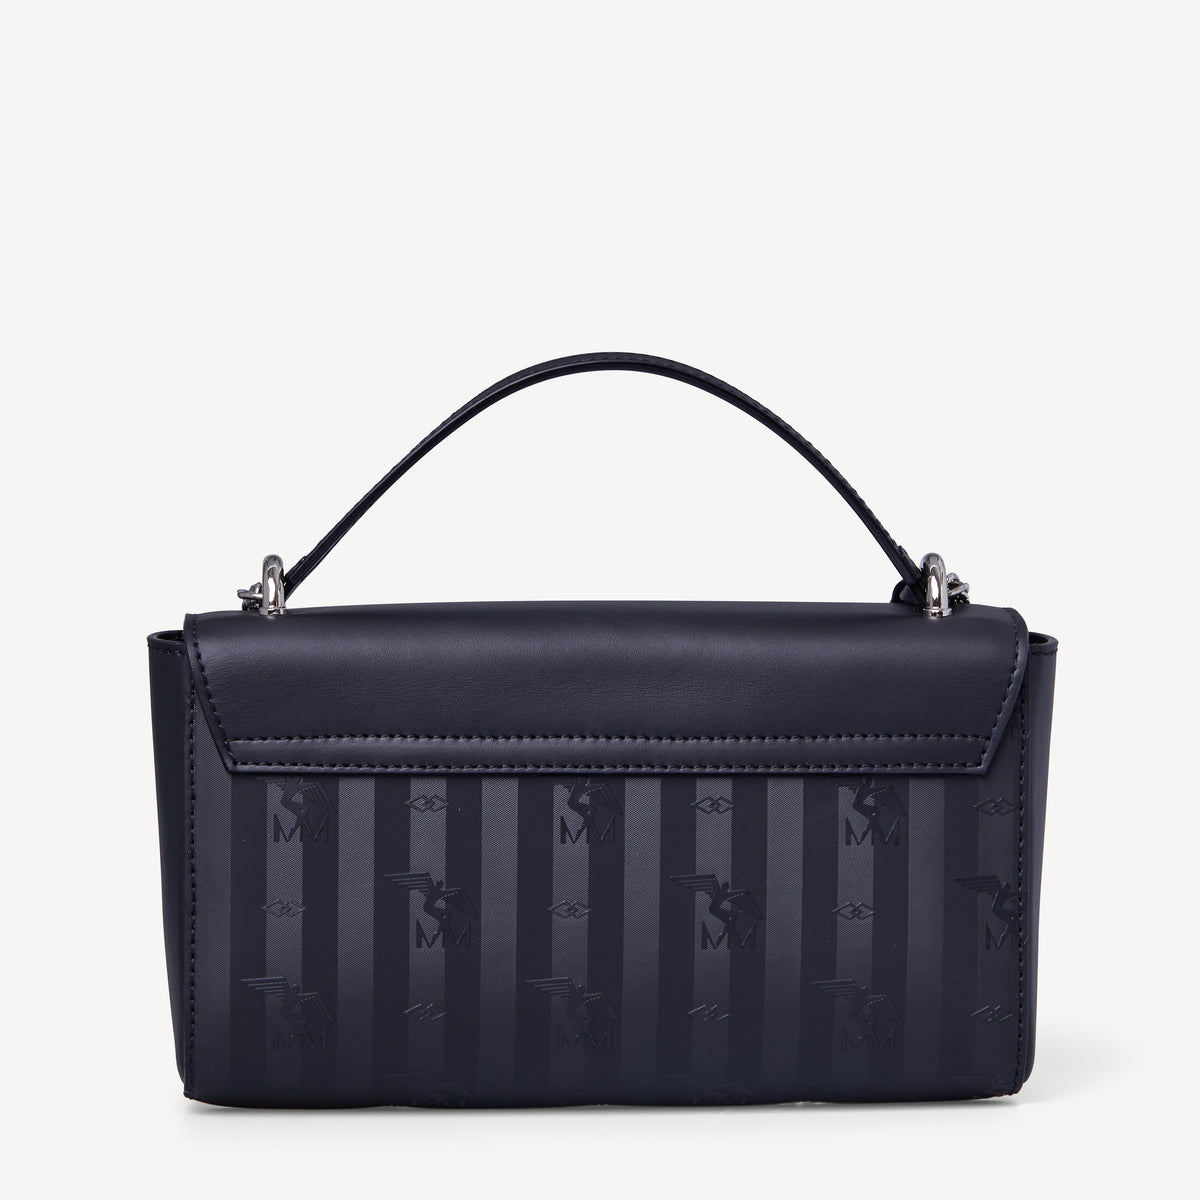 ROVIO | Kettentasche classic schwarz/silber - von hinten